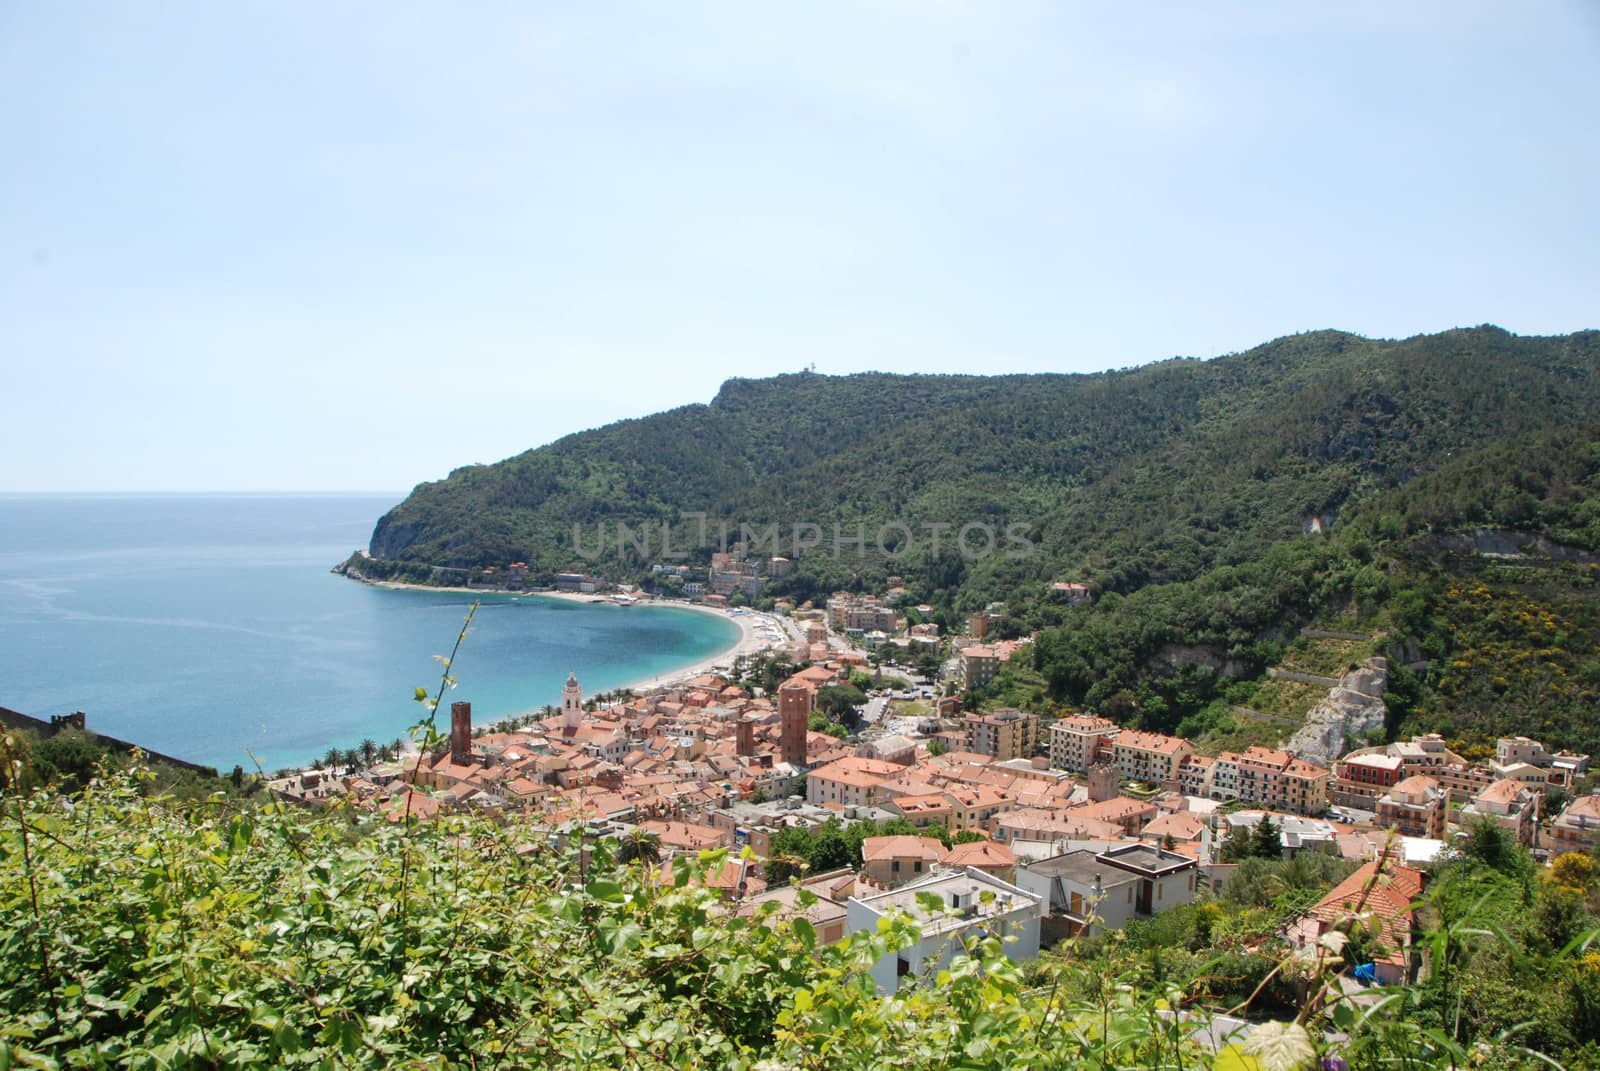 Noli, Liguria - Italy by cosca